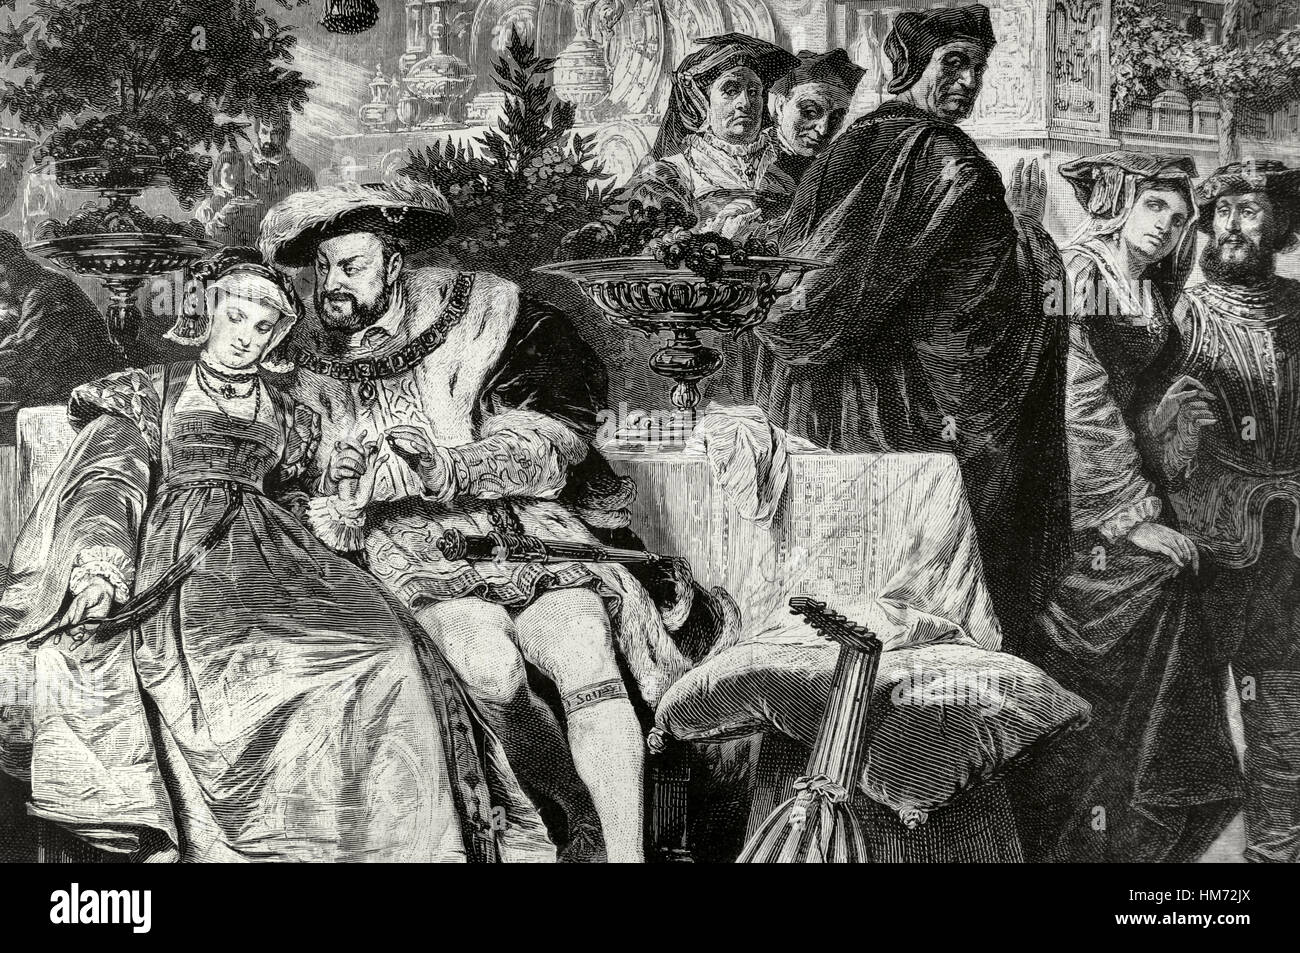 Heinrich VIII. (1491-1547). König von England. Heinrich VIII. mit Anne Boleyn (1501-1536) am Palast von Kardinal Wolsey. Kupferstich nach dem Gemälde von Karl von Piloty, 19. Jahrhundert. Stockfoto